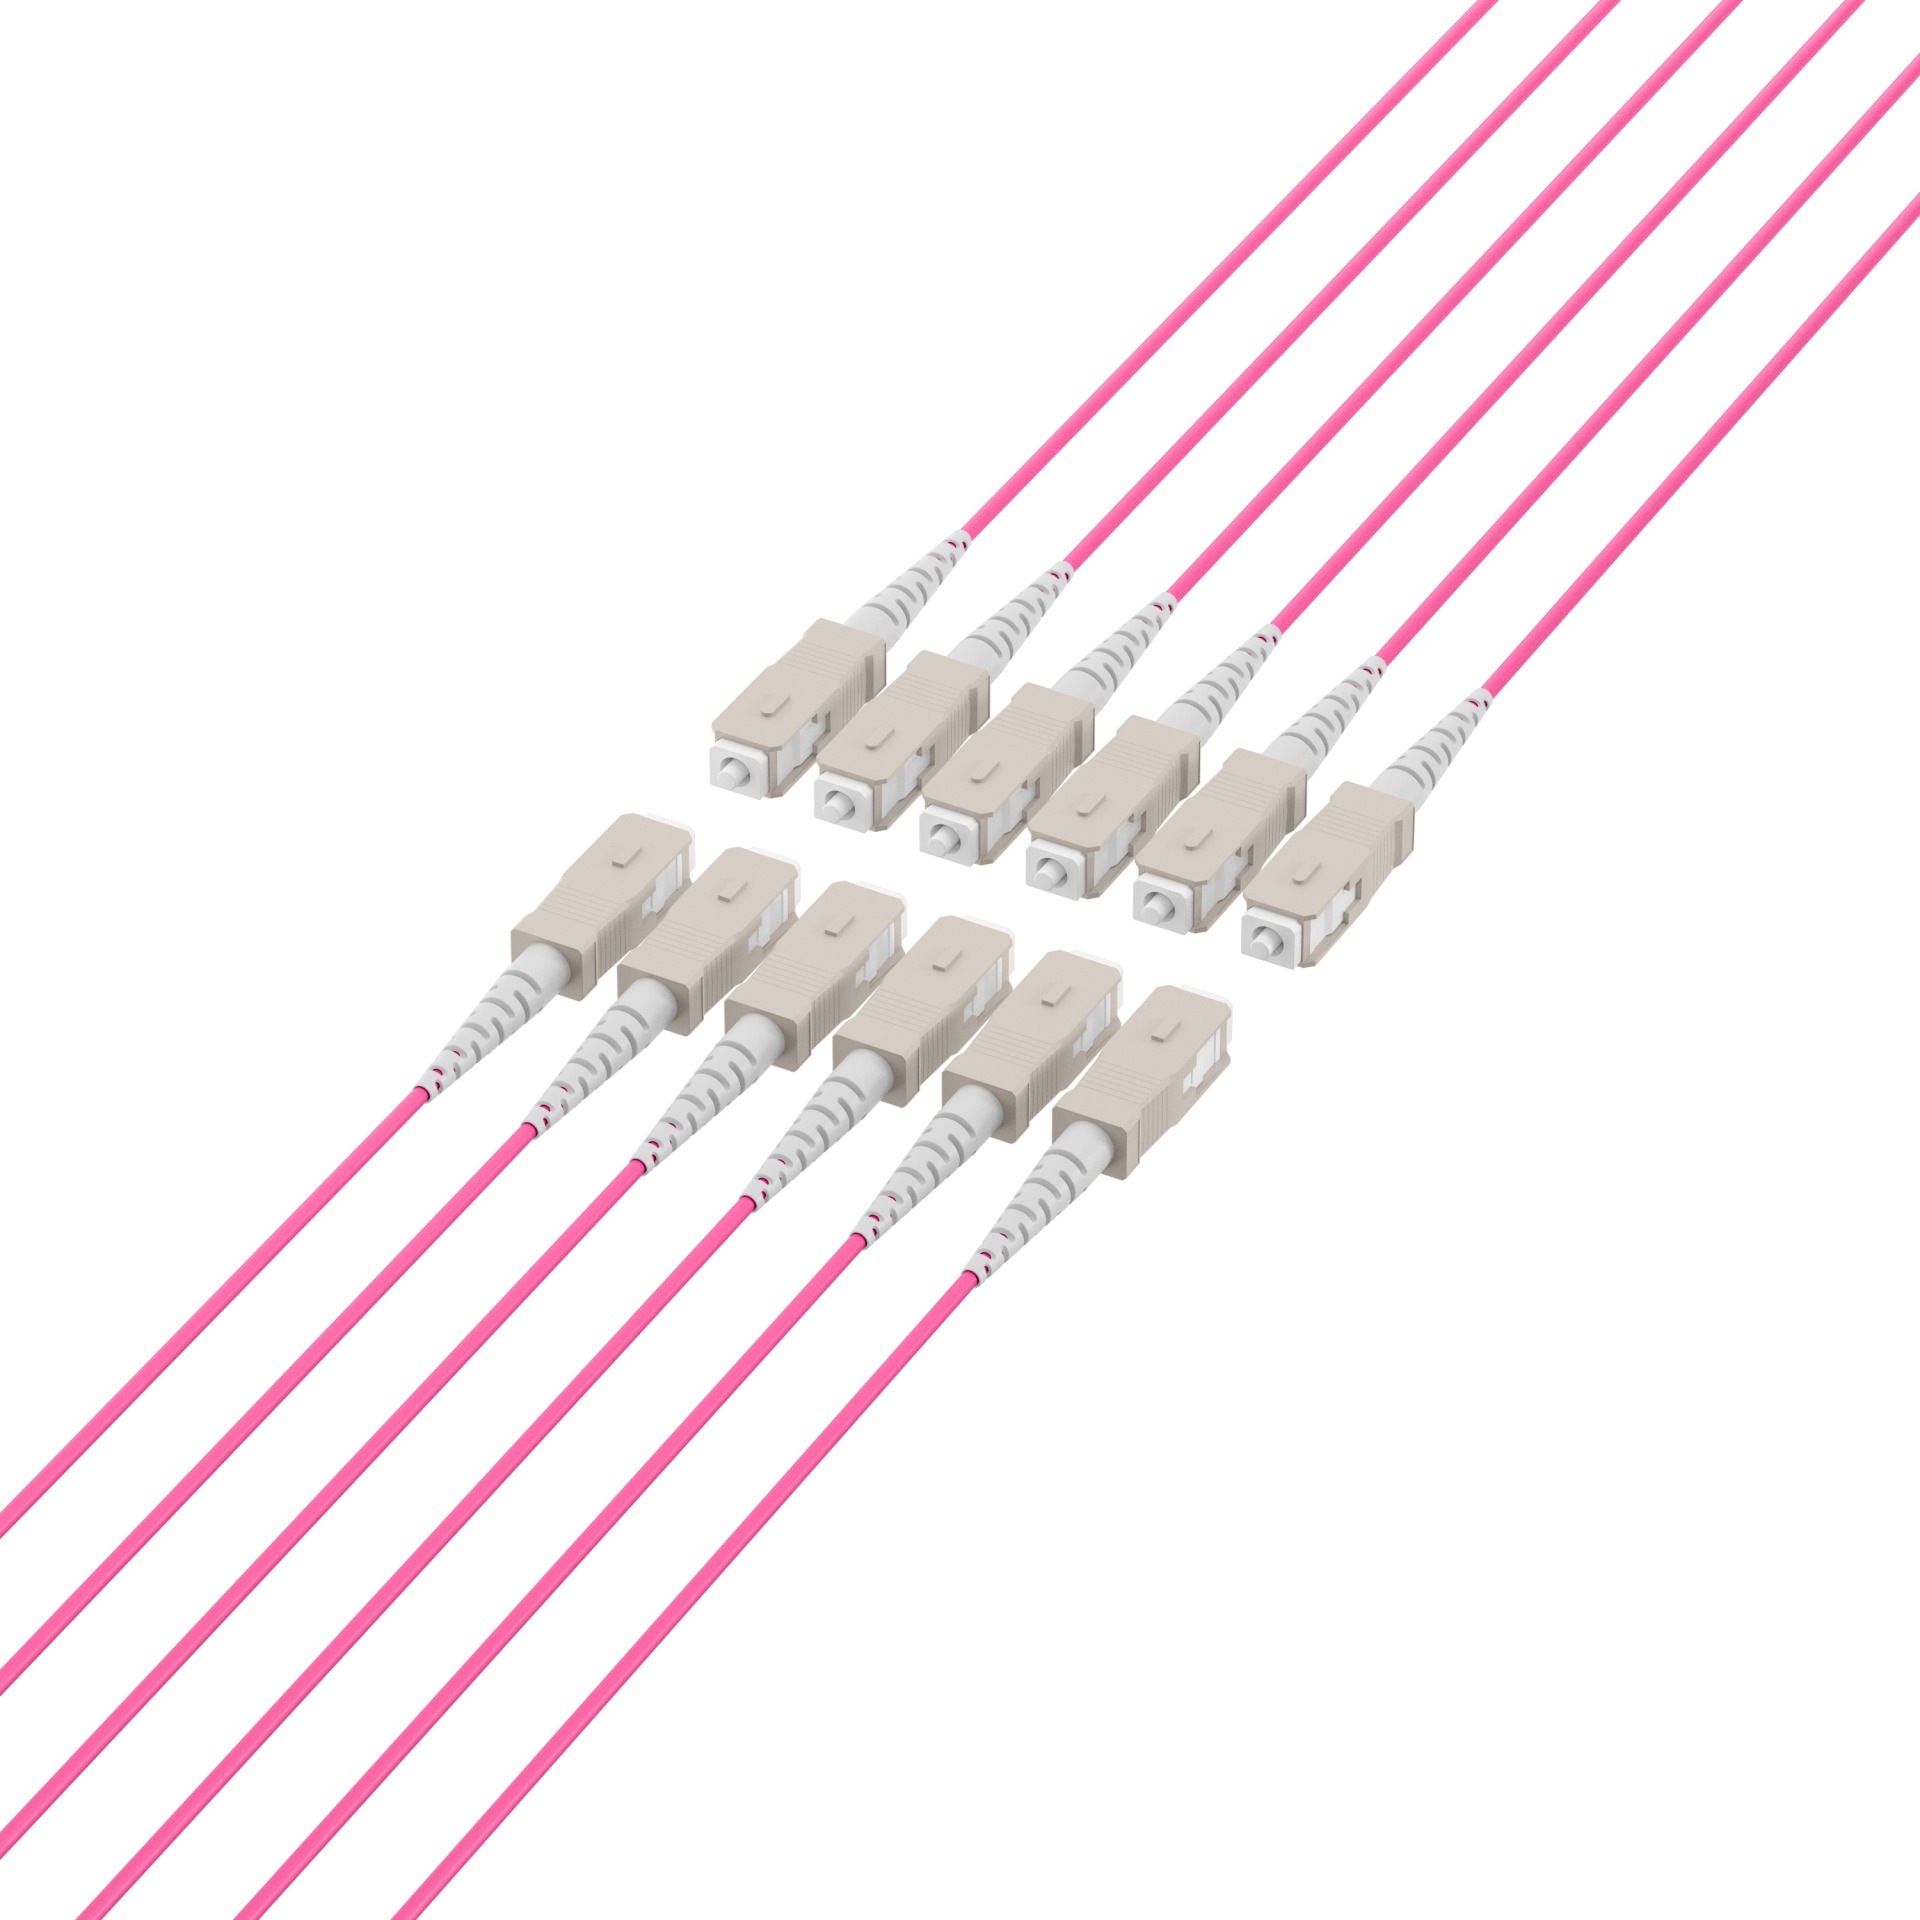 Trunk cable U-DQ(ZN)BH OM4 12G (1x12) SC-SC,140m Dca LSZH